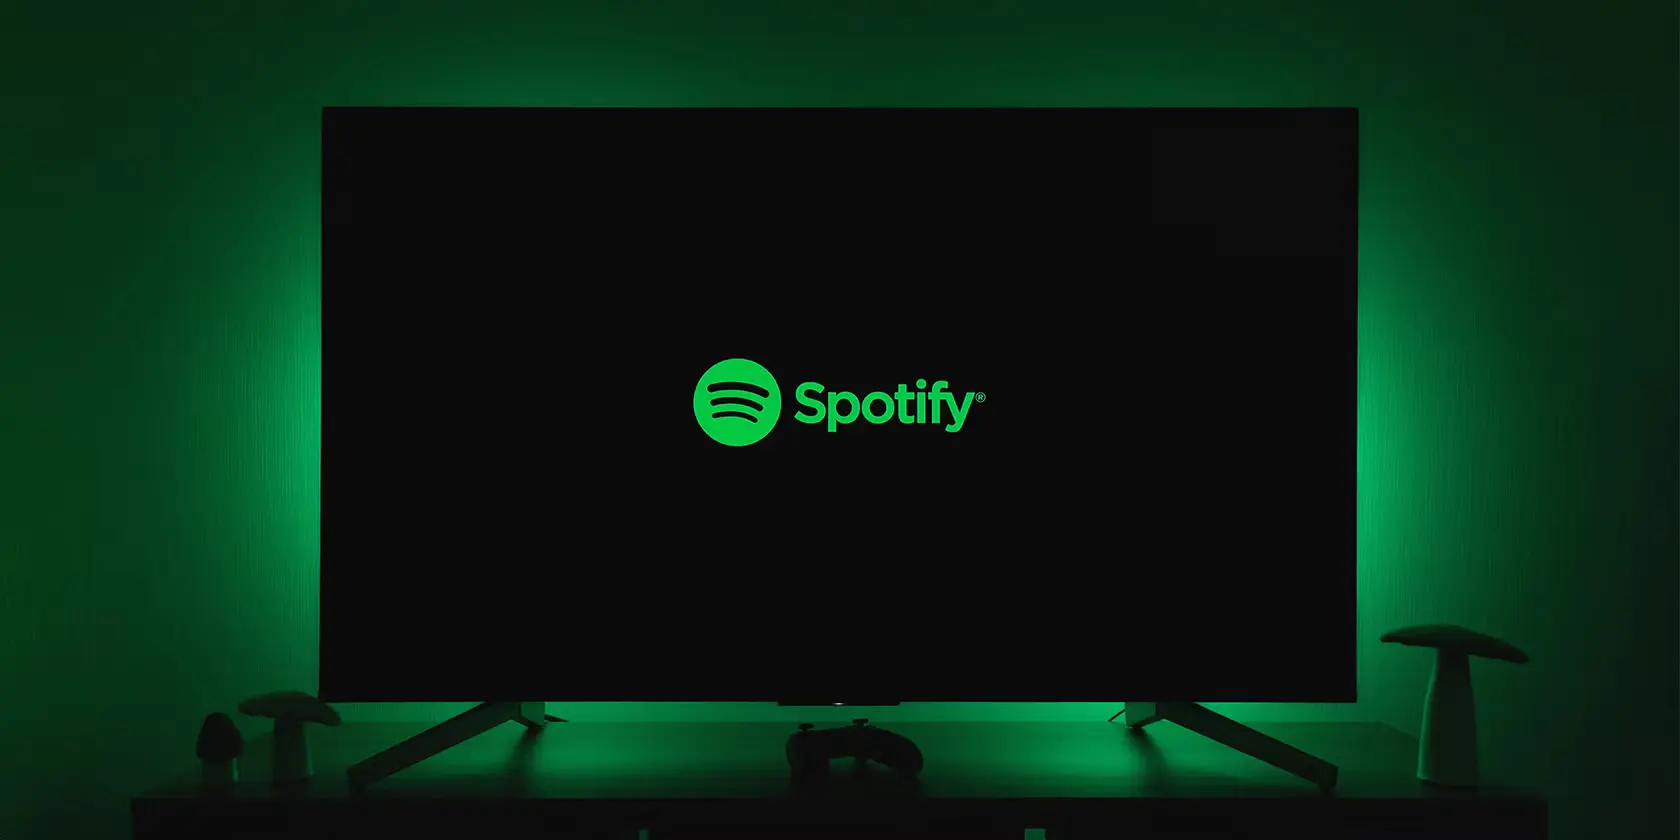 Spotify TV